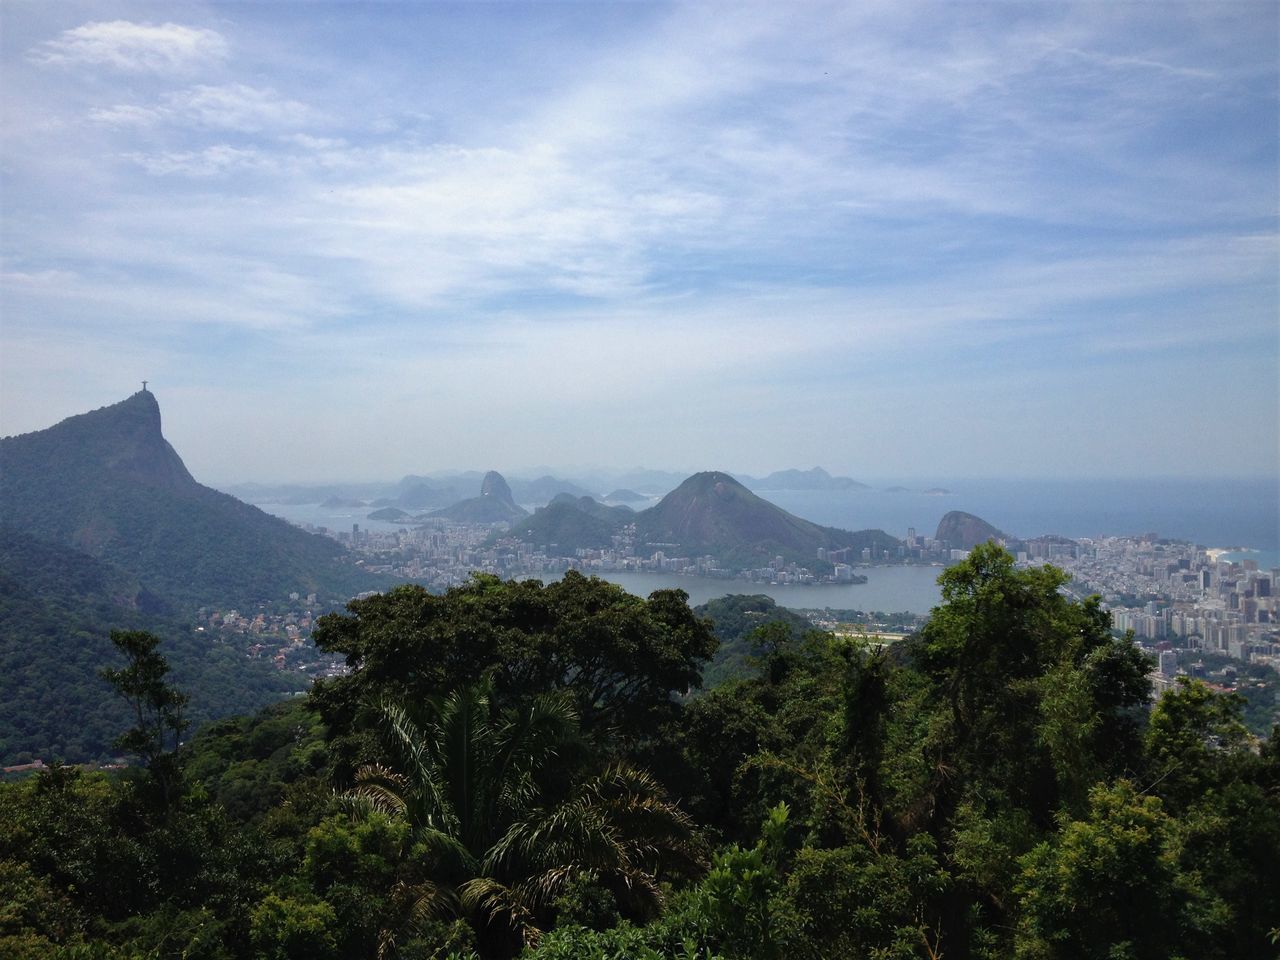 The best view of Rio de Janeiro